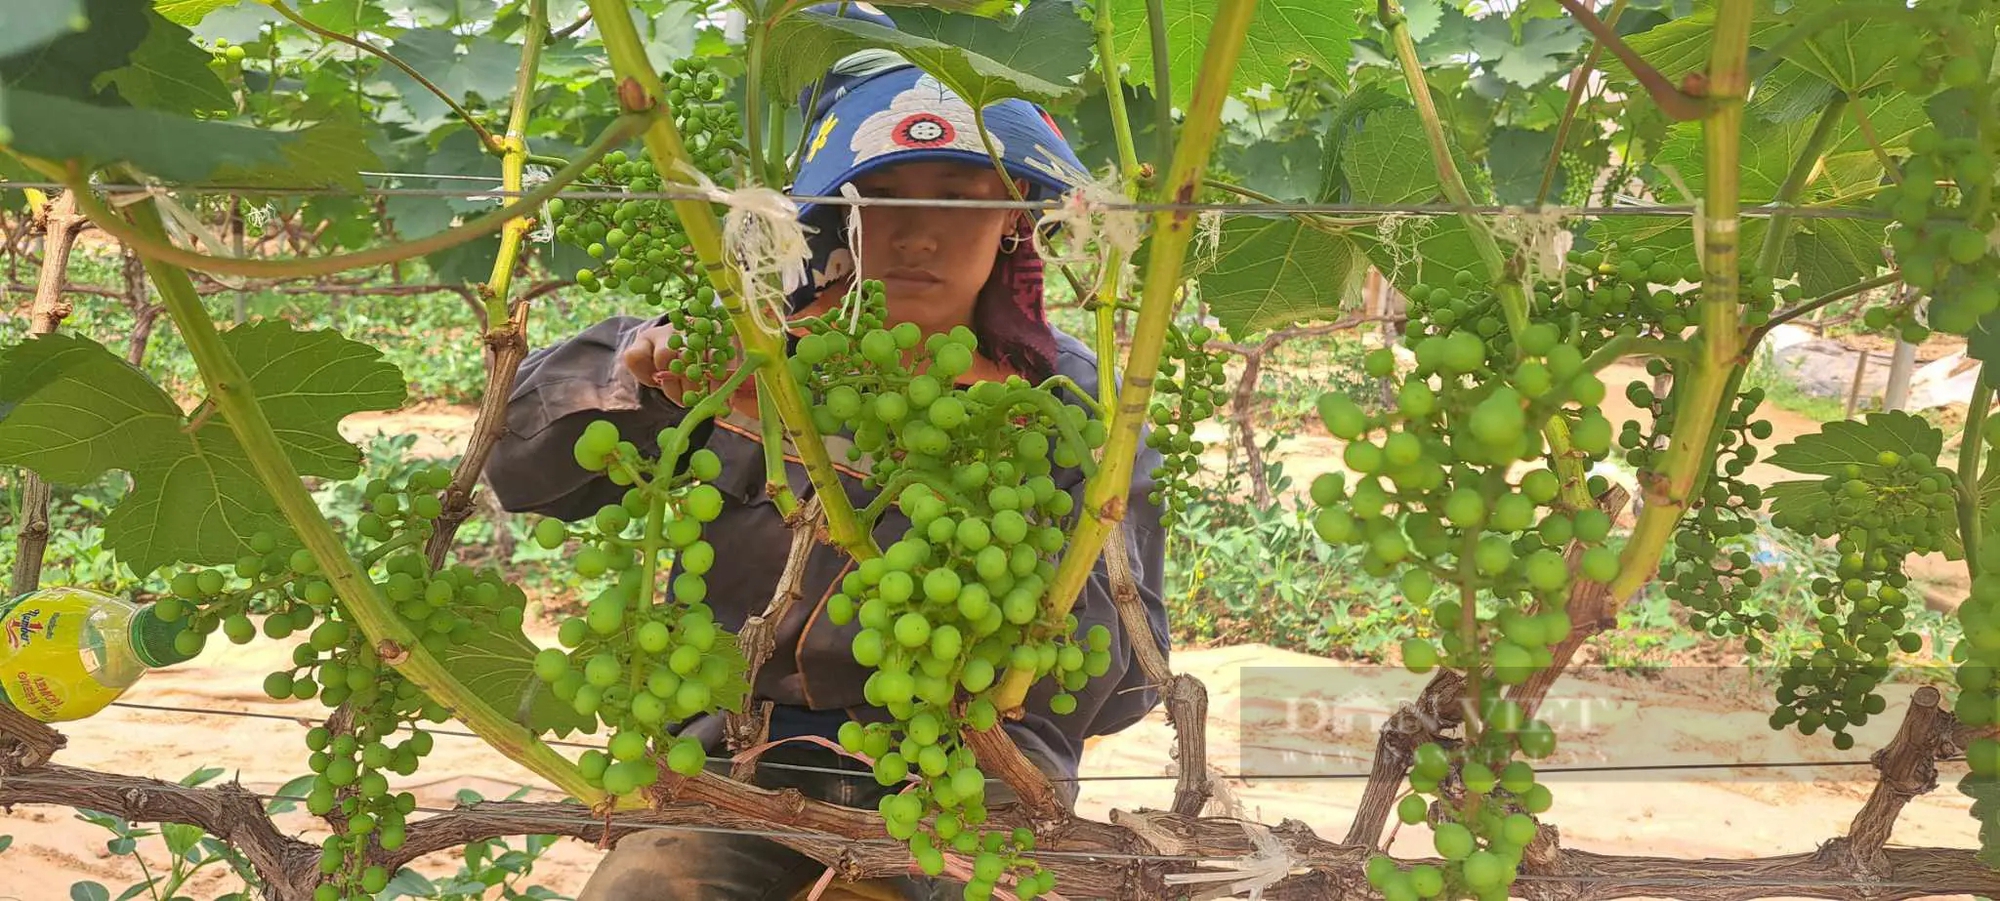 Trồng nho ở Sơn La kiểu gì mà vô vườn nhìn đâu cũng thấy trái, hái 150ha, nông dân "bỏ túi" bộn tiền- Ảnh 4.